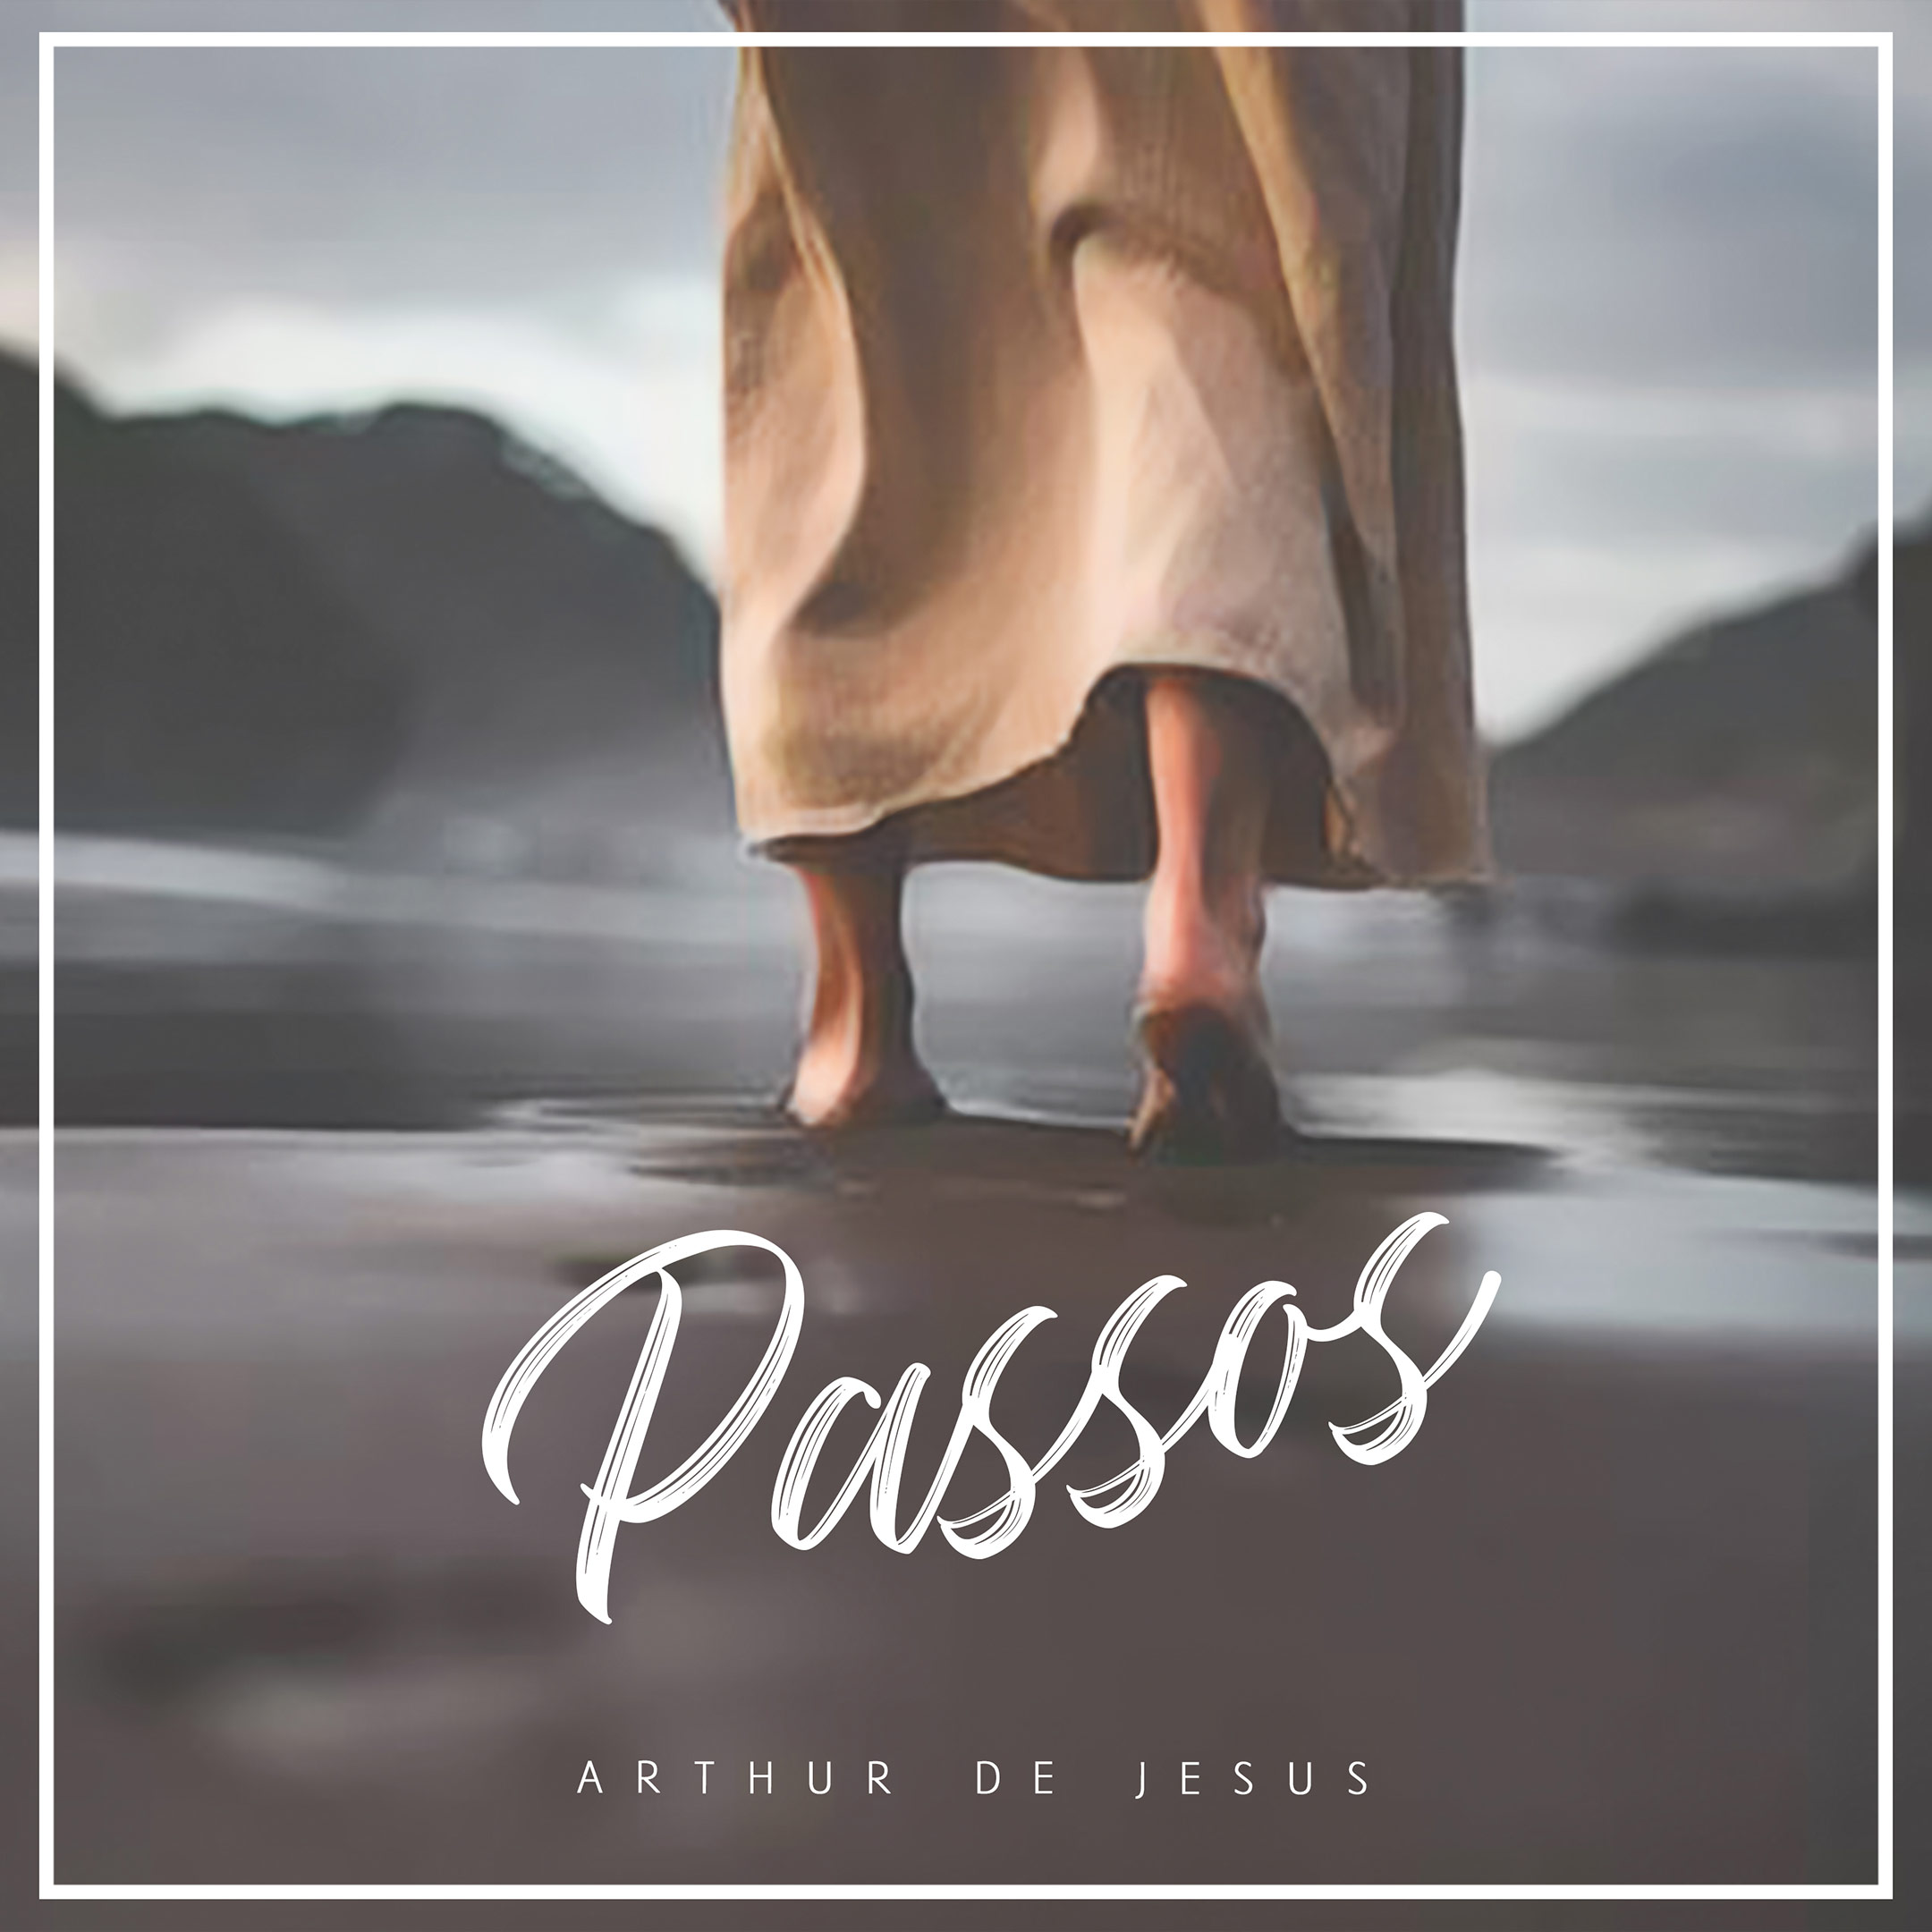 Arthur de Jesus lança "Passos" o primeiro single inédito do novo EP